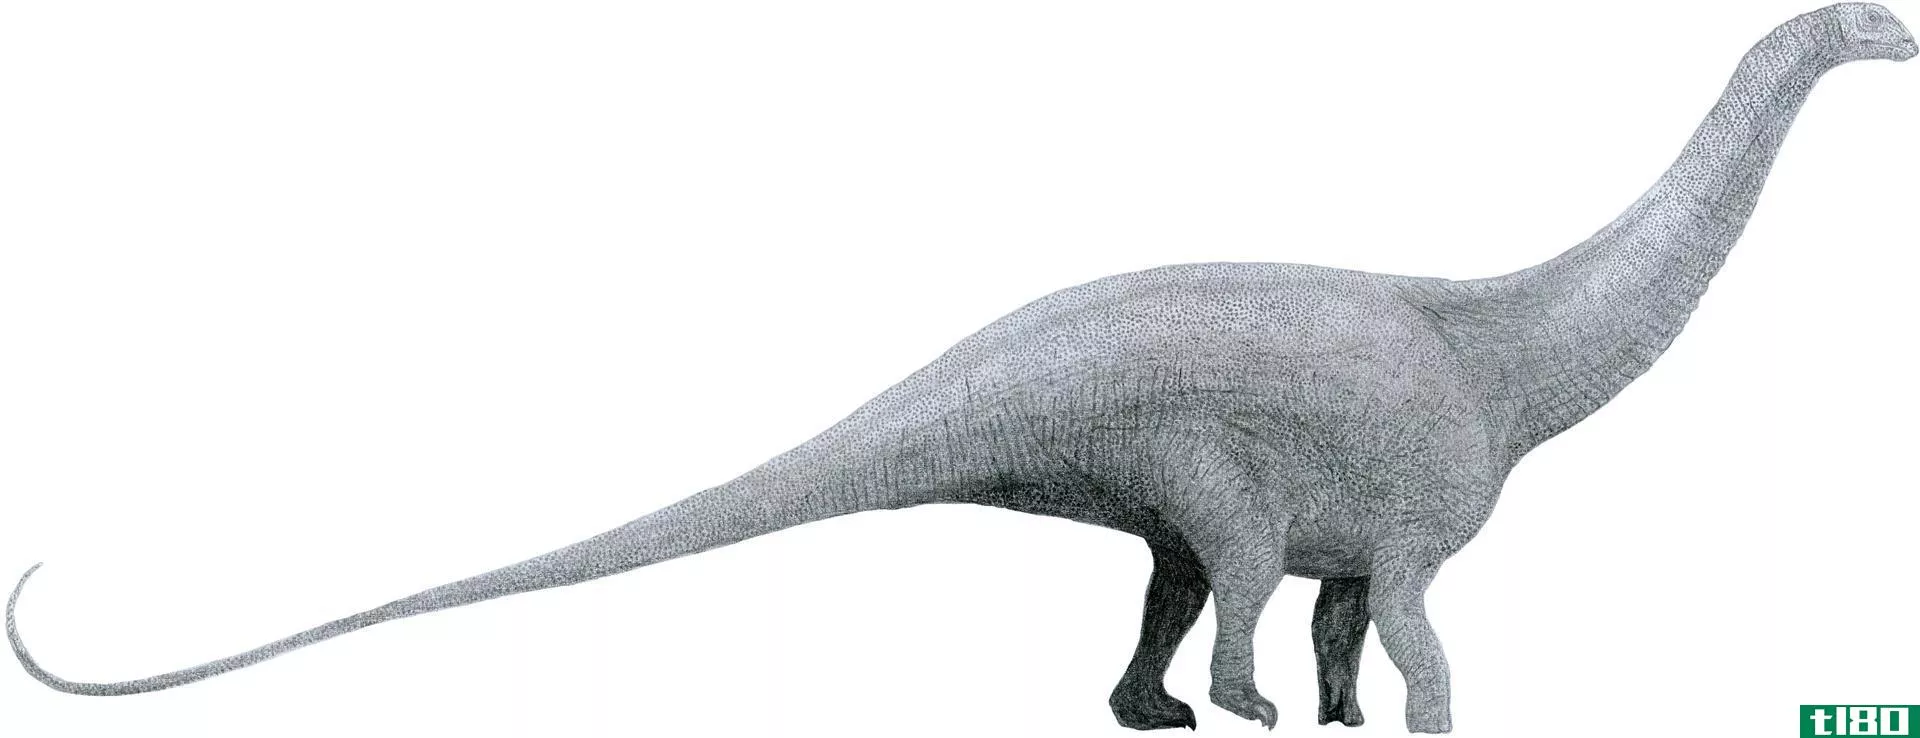 雷龙(brontosaurus)和腕龙(brachiosaurus)的区别